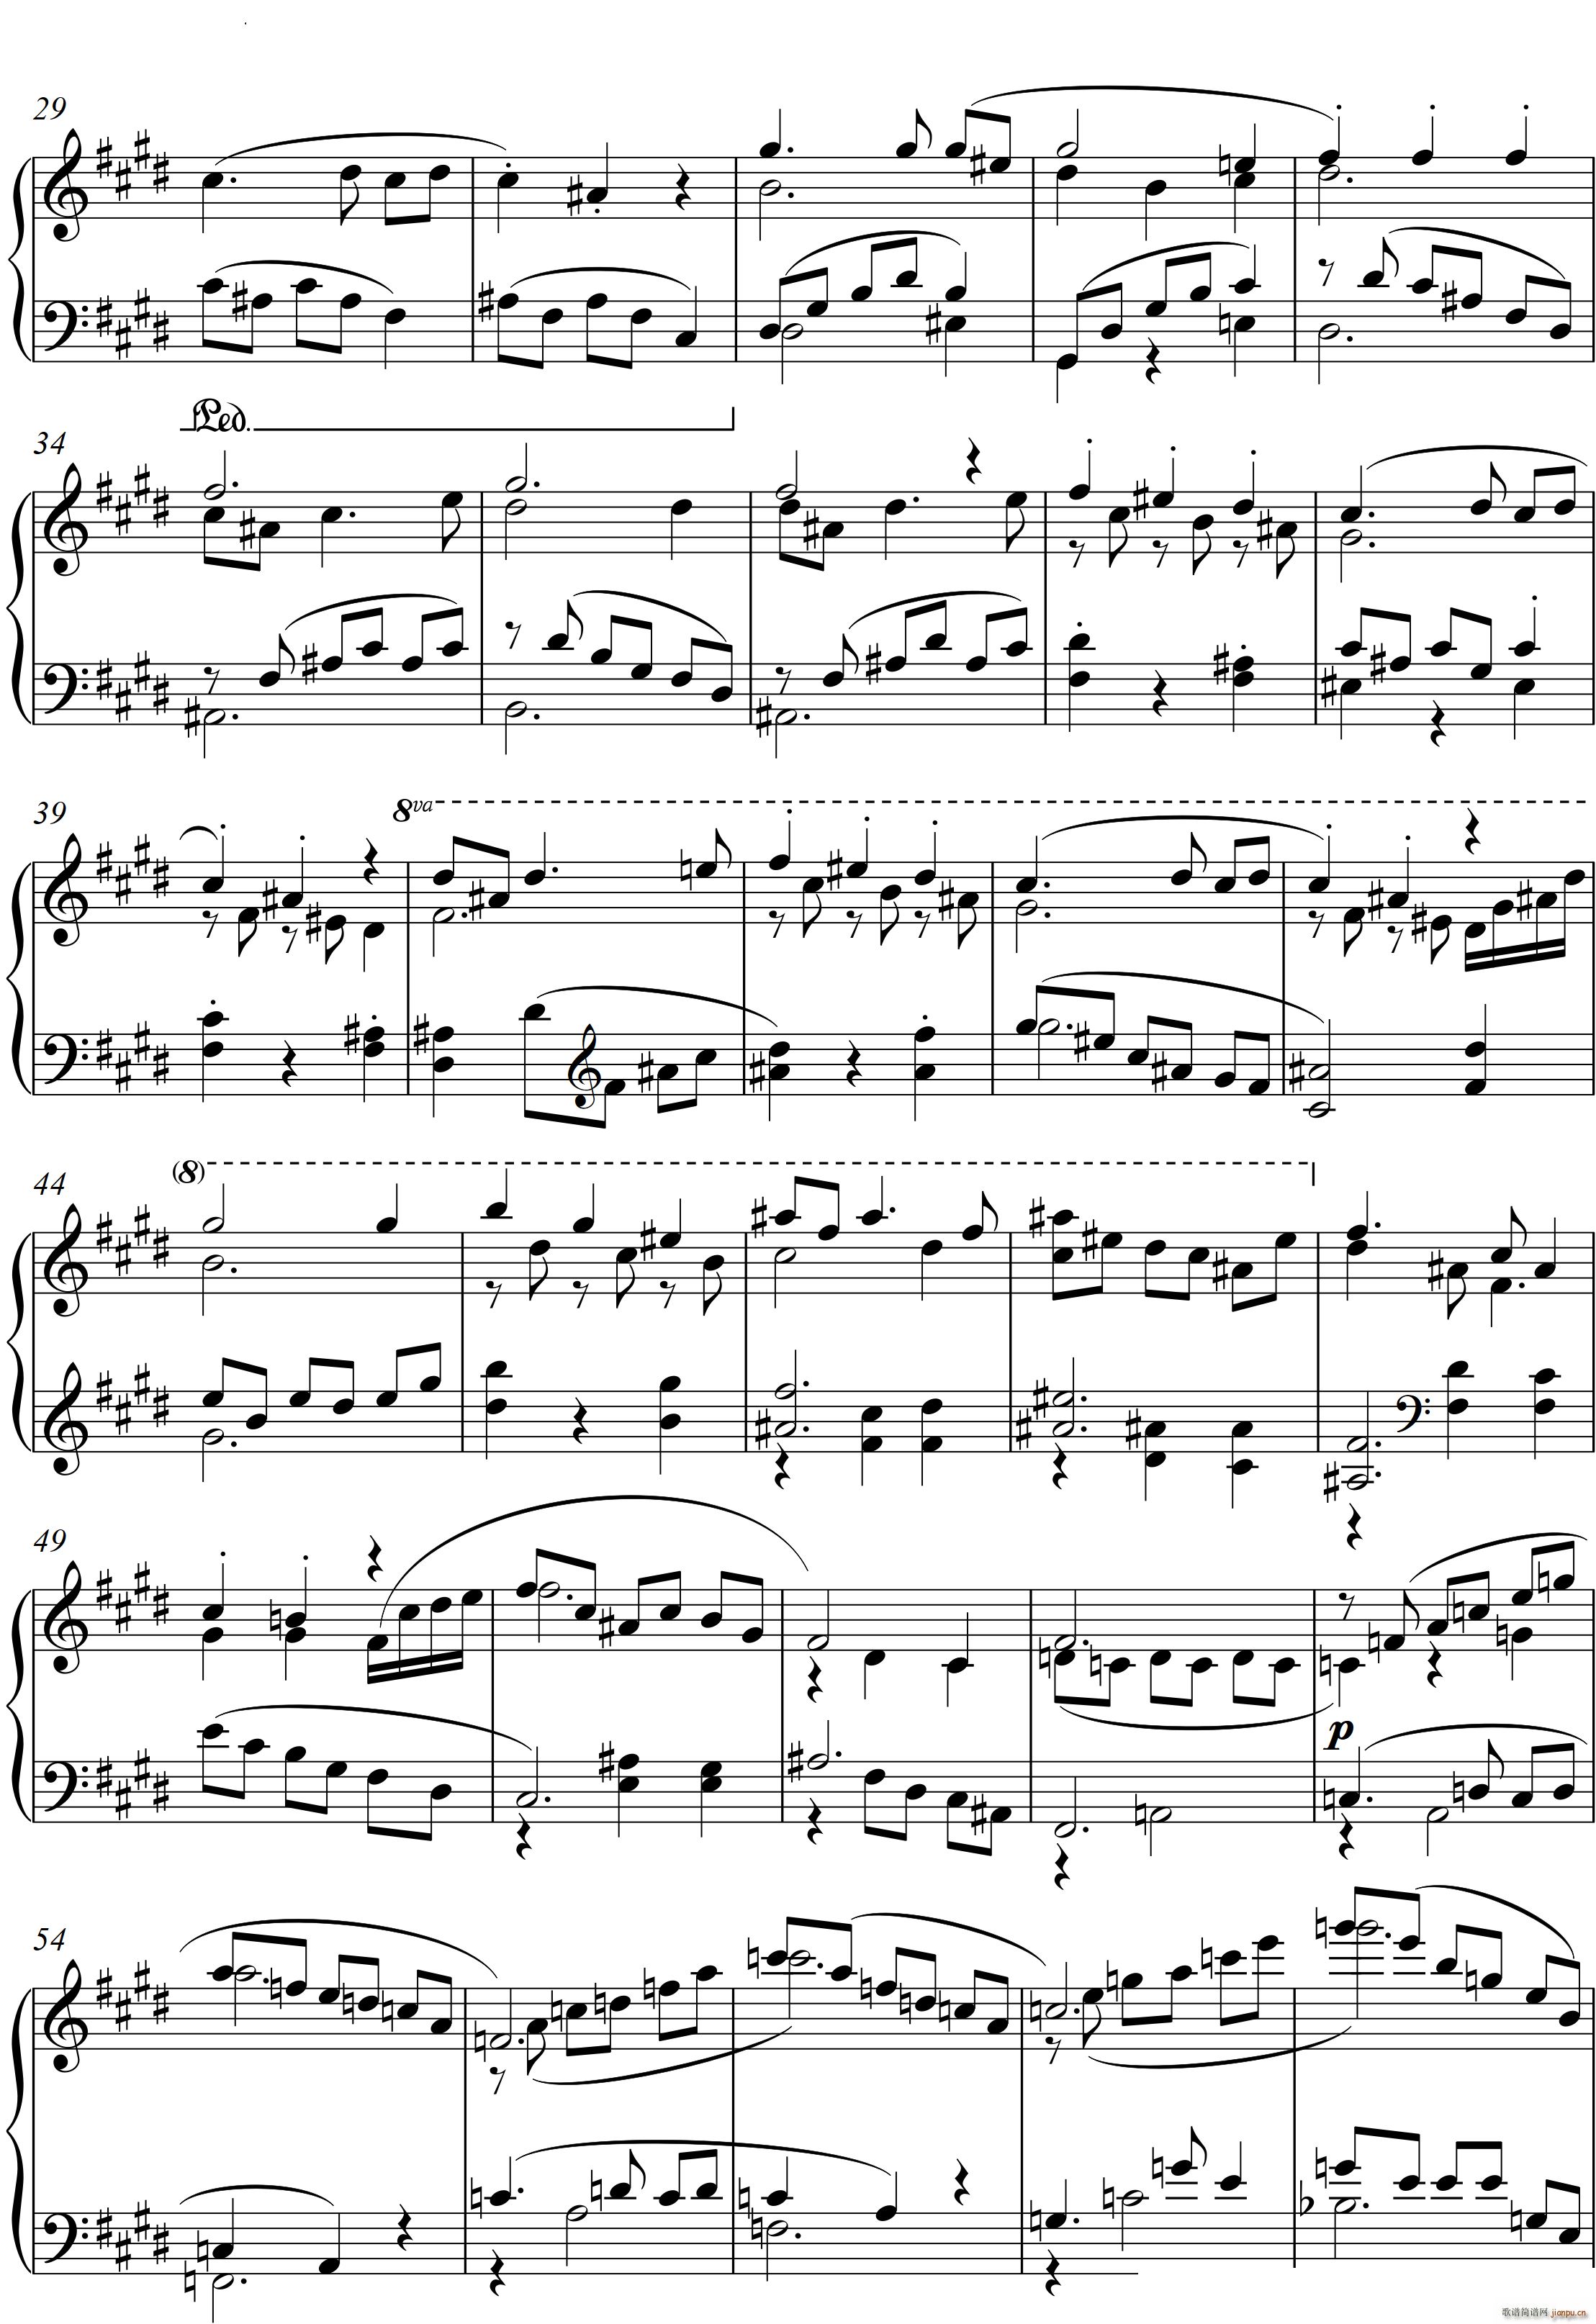 第22钢琴奏鸣曲 信仰 Piano Sonata No`22四个乐章(钢琴谱)12